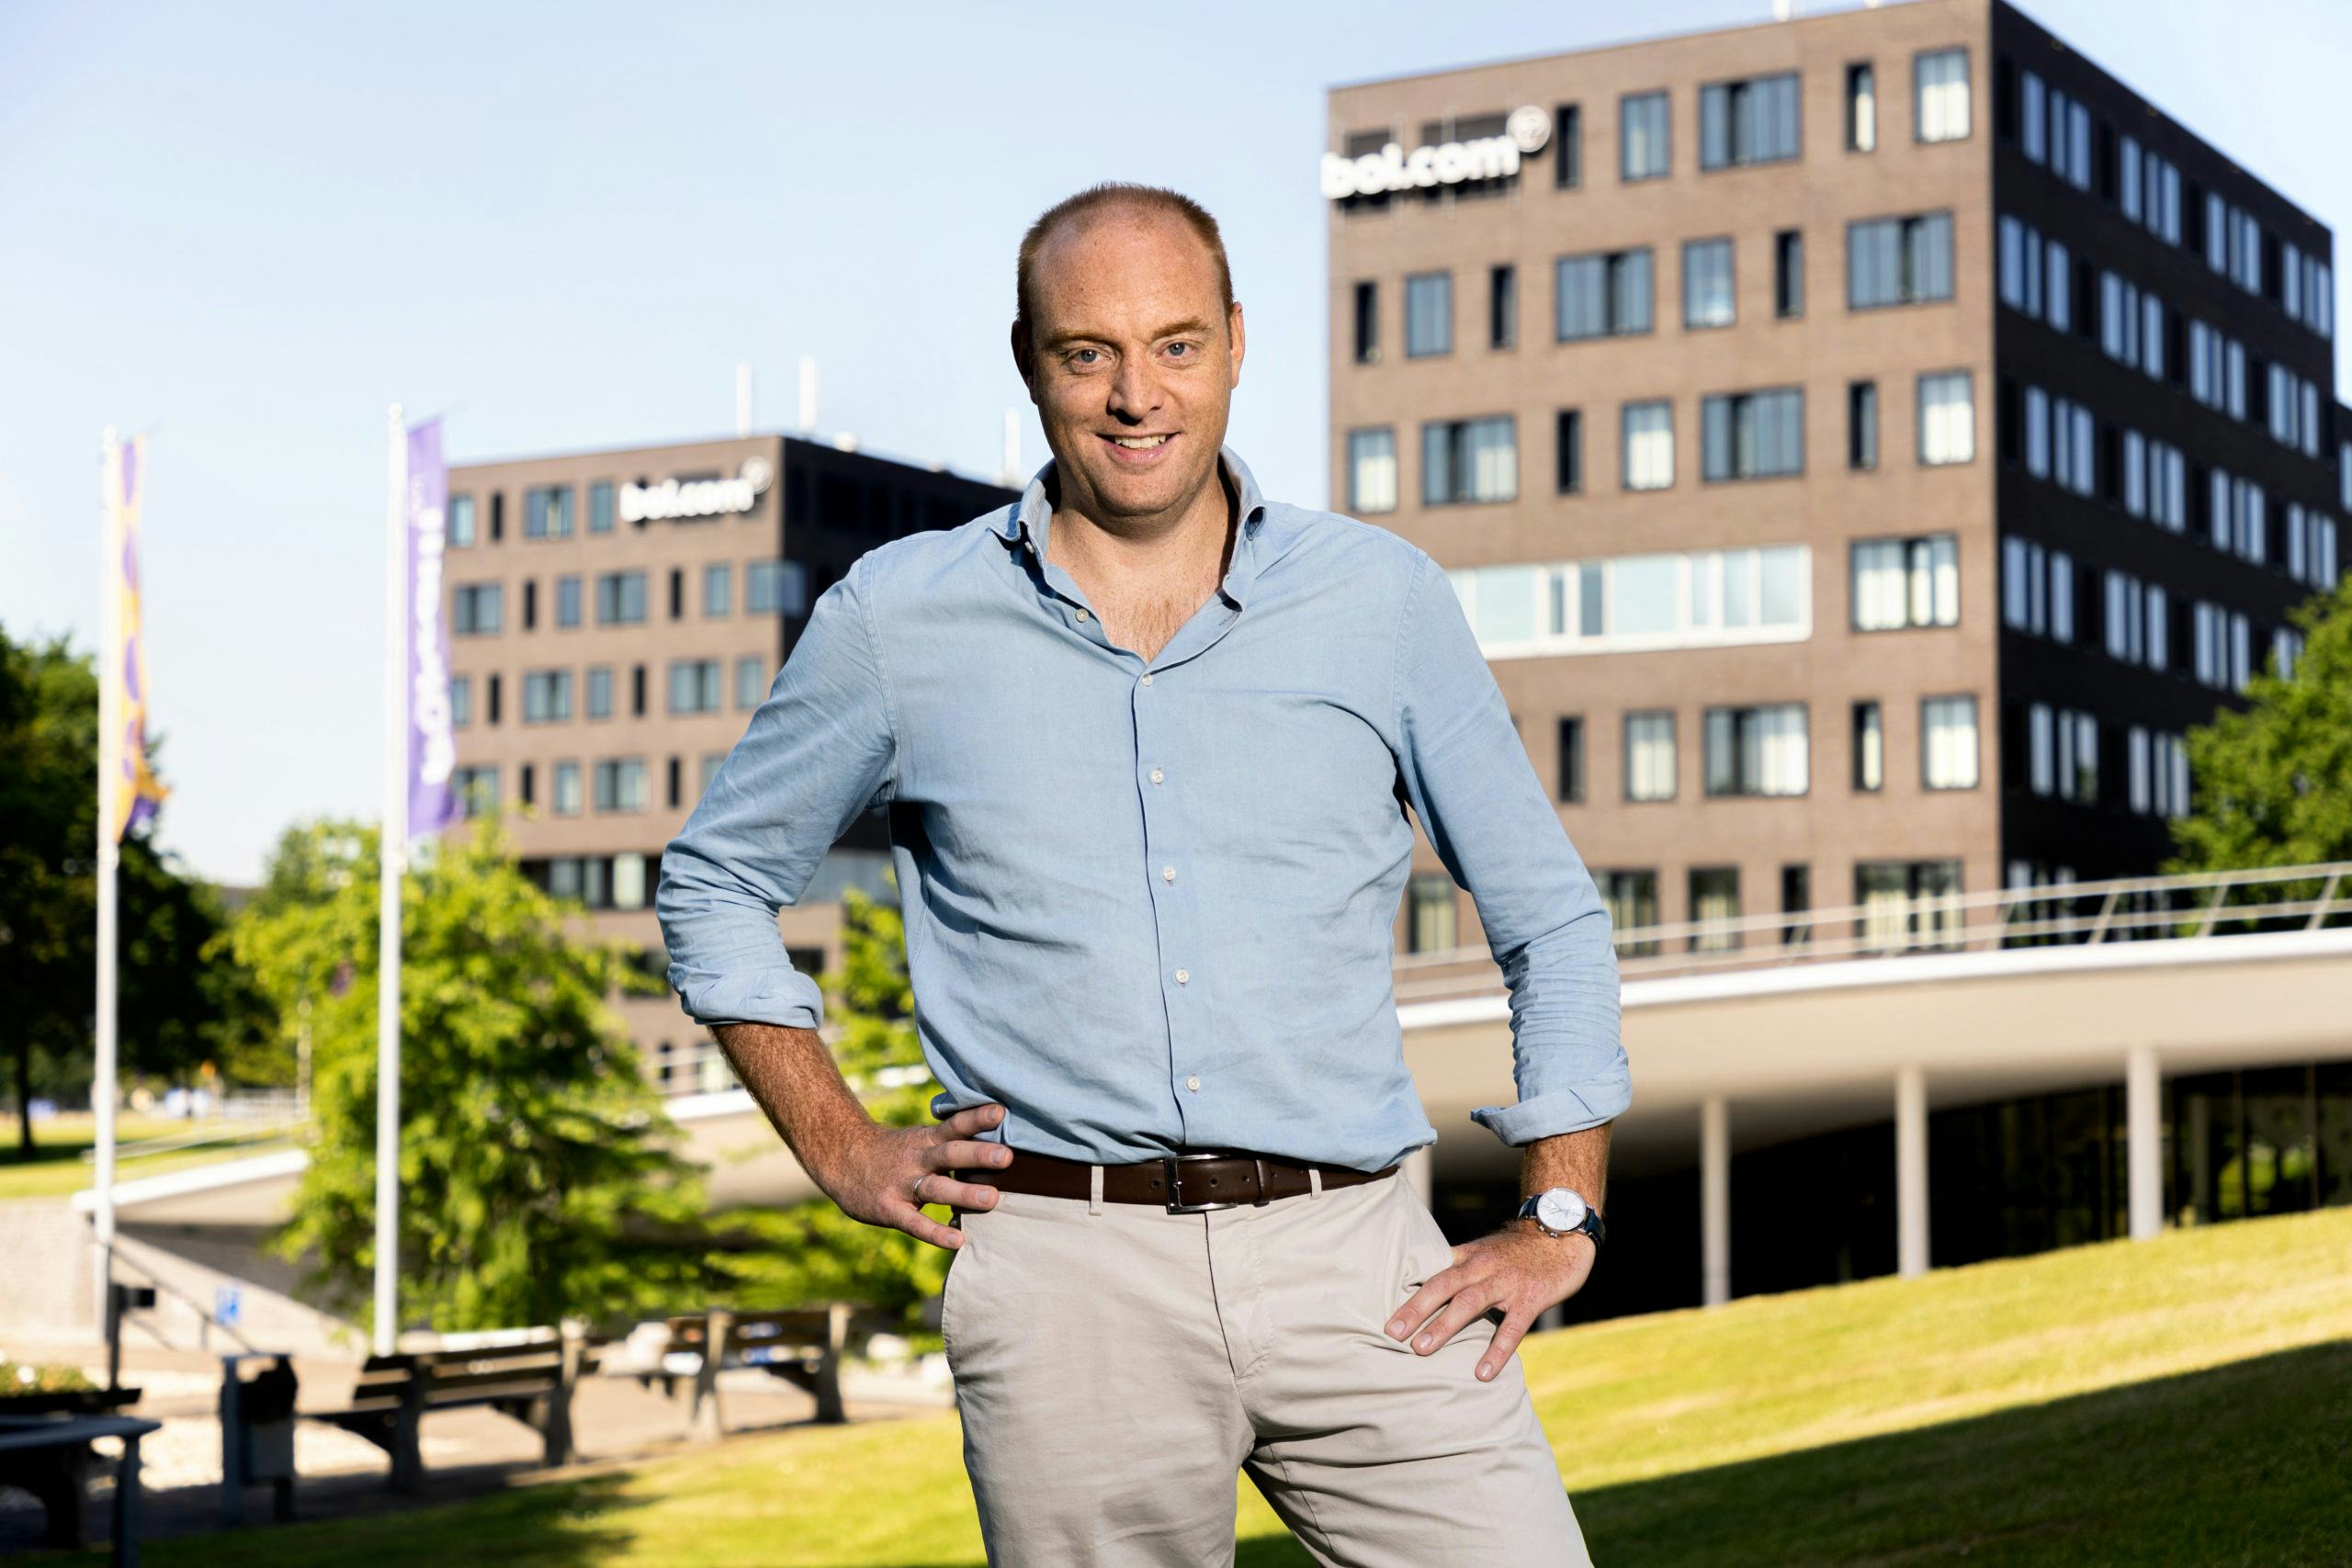 Joost Poelgeest (bol.com): "Continu werken aan uitbreiding van duurzame logistieke capaciteit"